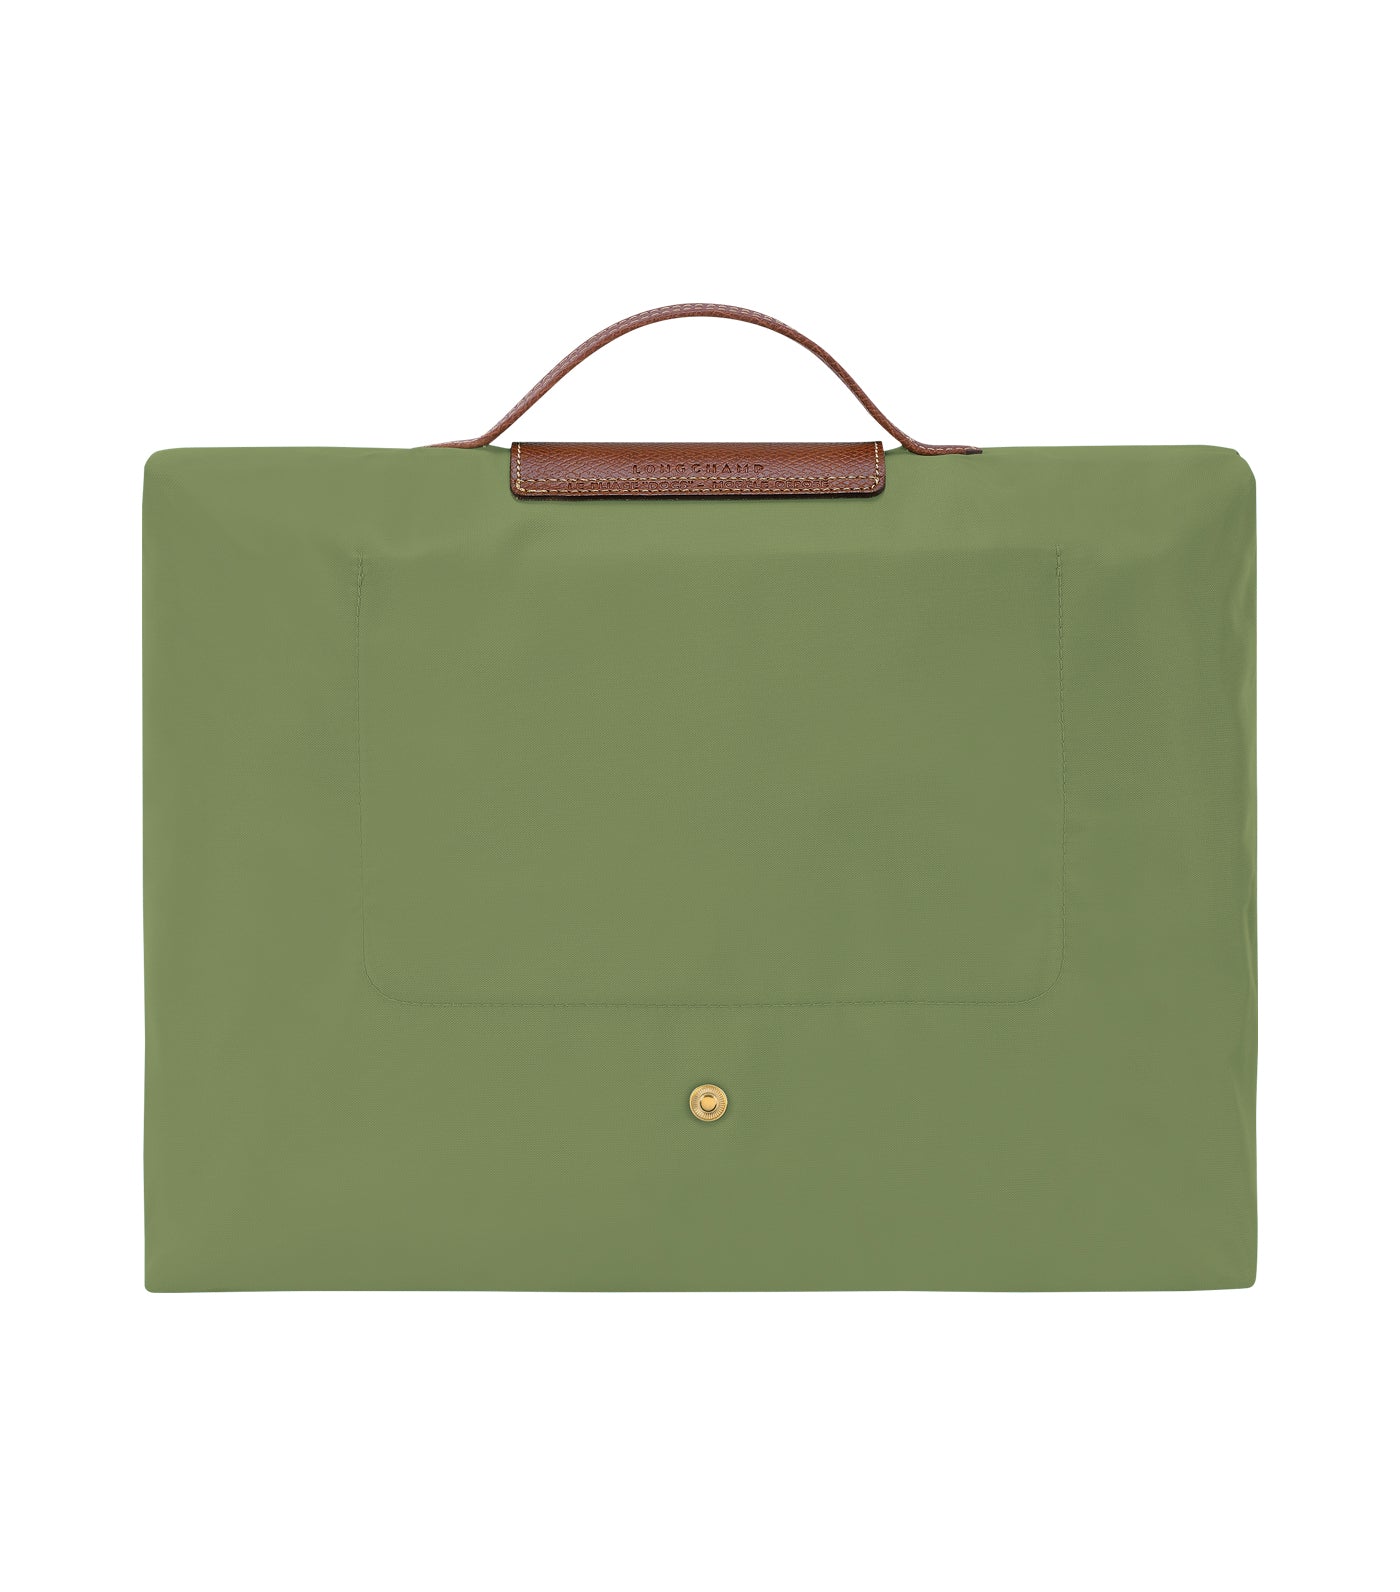 Le Pliage Original Briefcase S Lichen